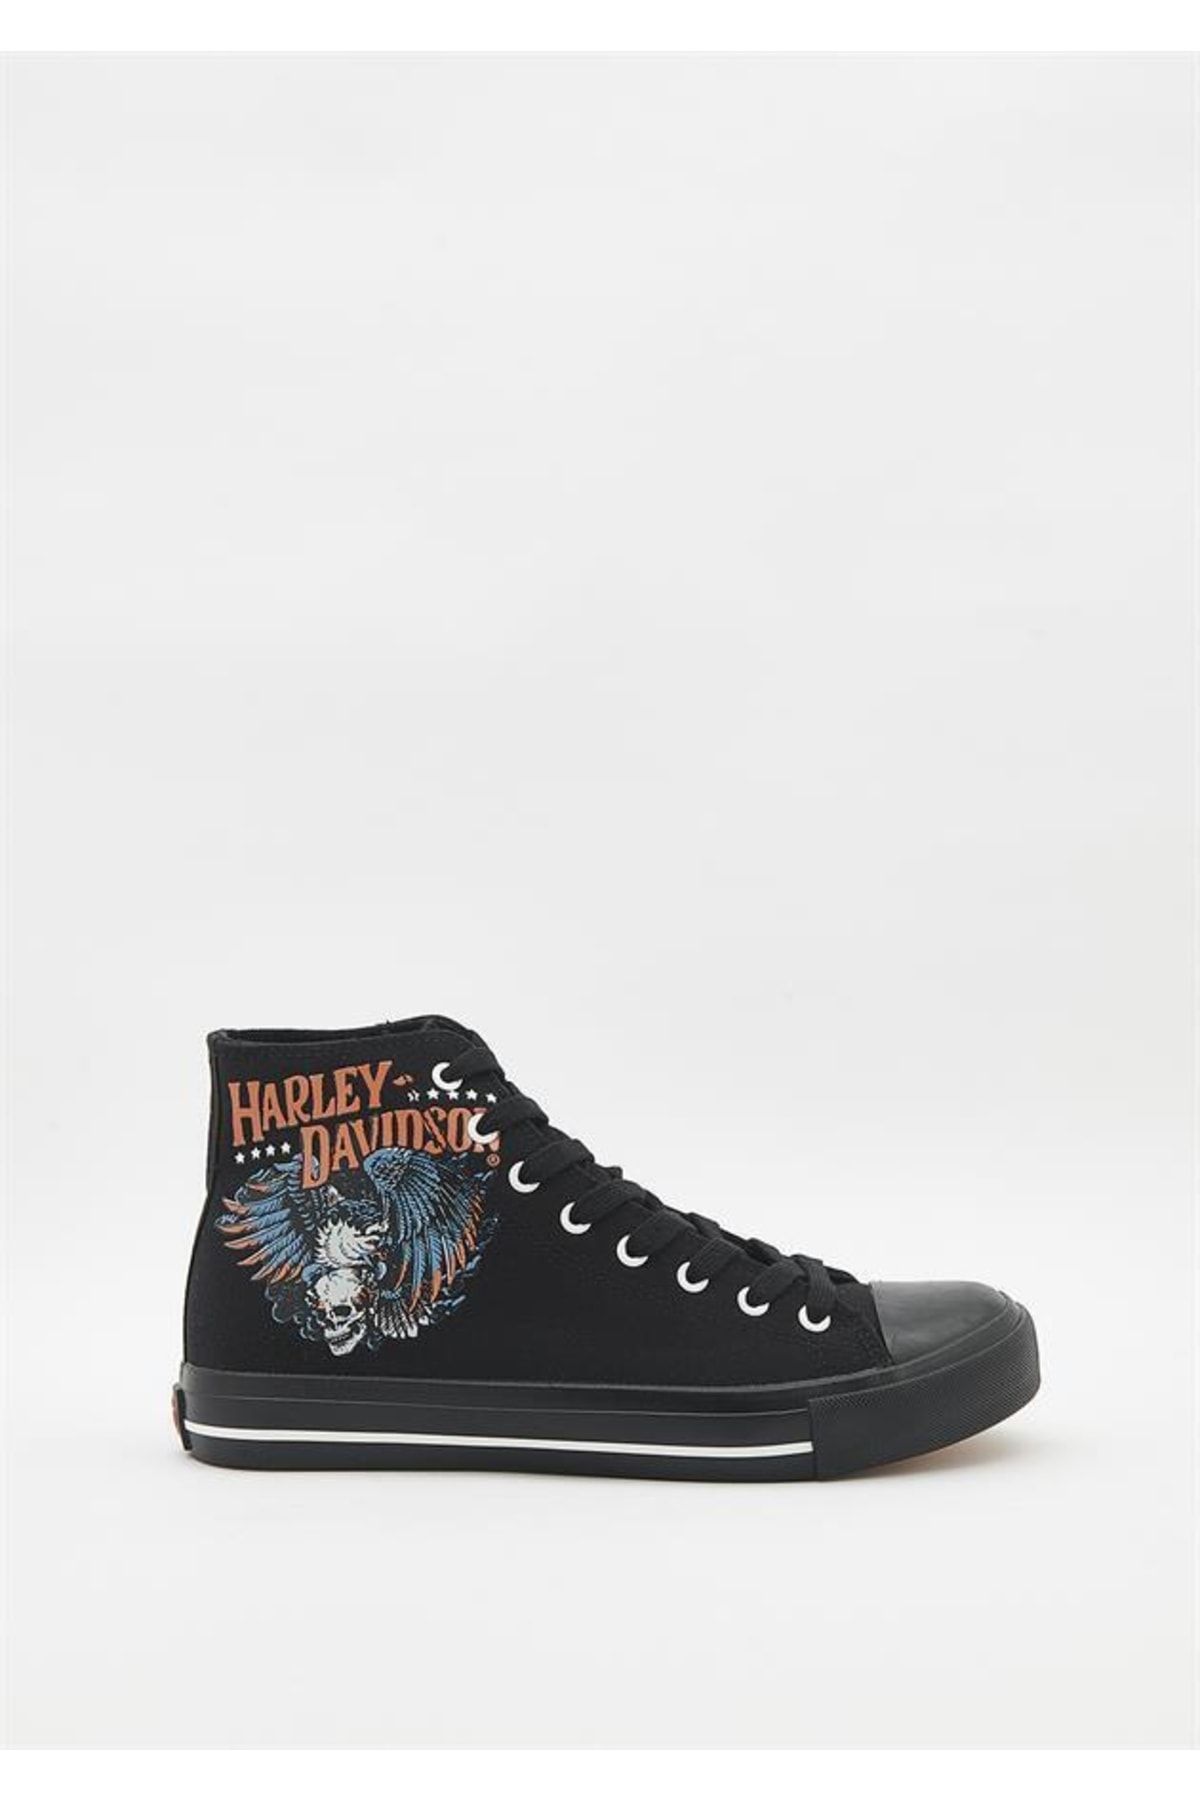 Harley Davidson 023m100359 Phoenix Black Erkek Sneaker